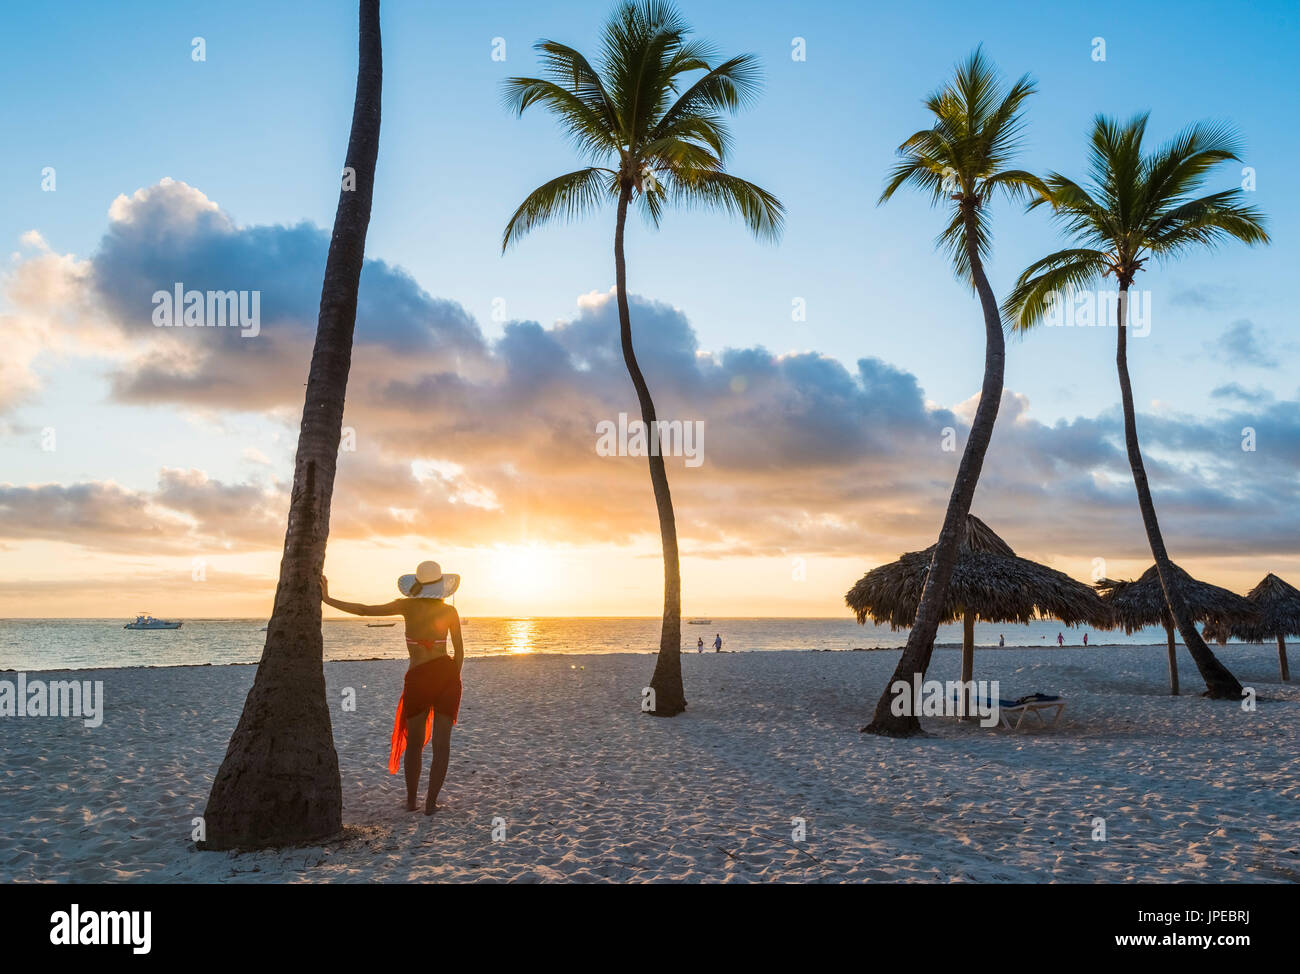 Playa Bavaro Higuey, Bávaro, Punta Cana, República Dominicana. Mujer admirando el amanecer en una playa llena de palmeras (MR). Foto de stock